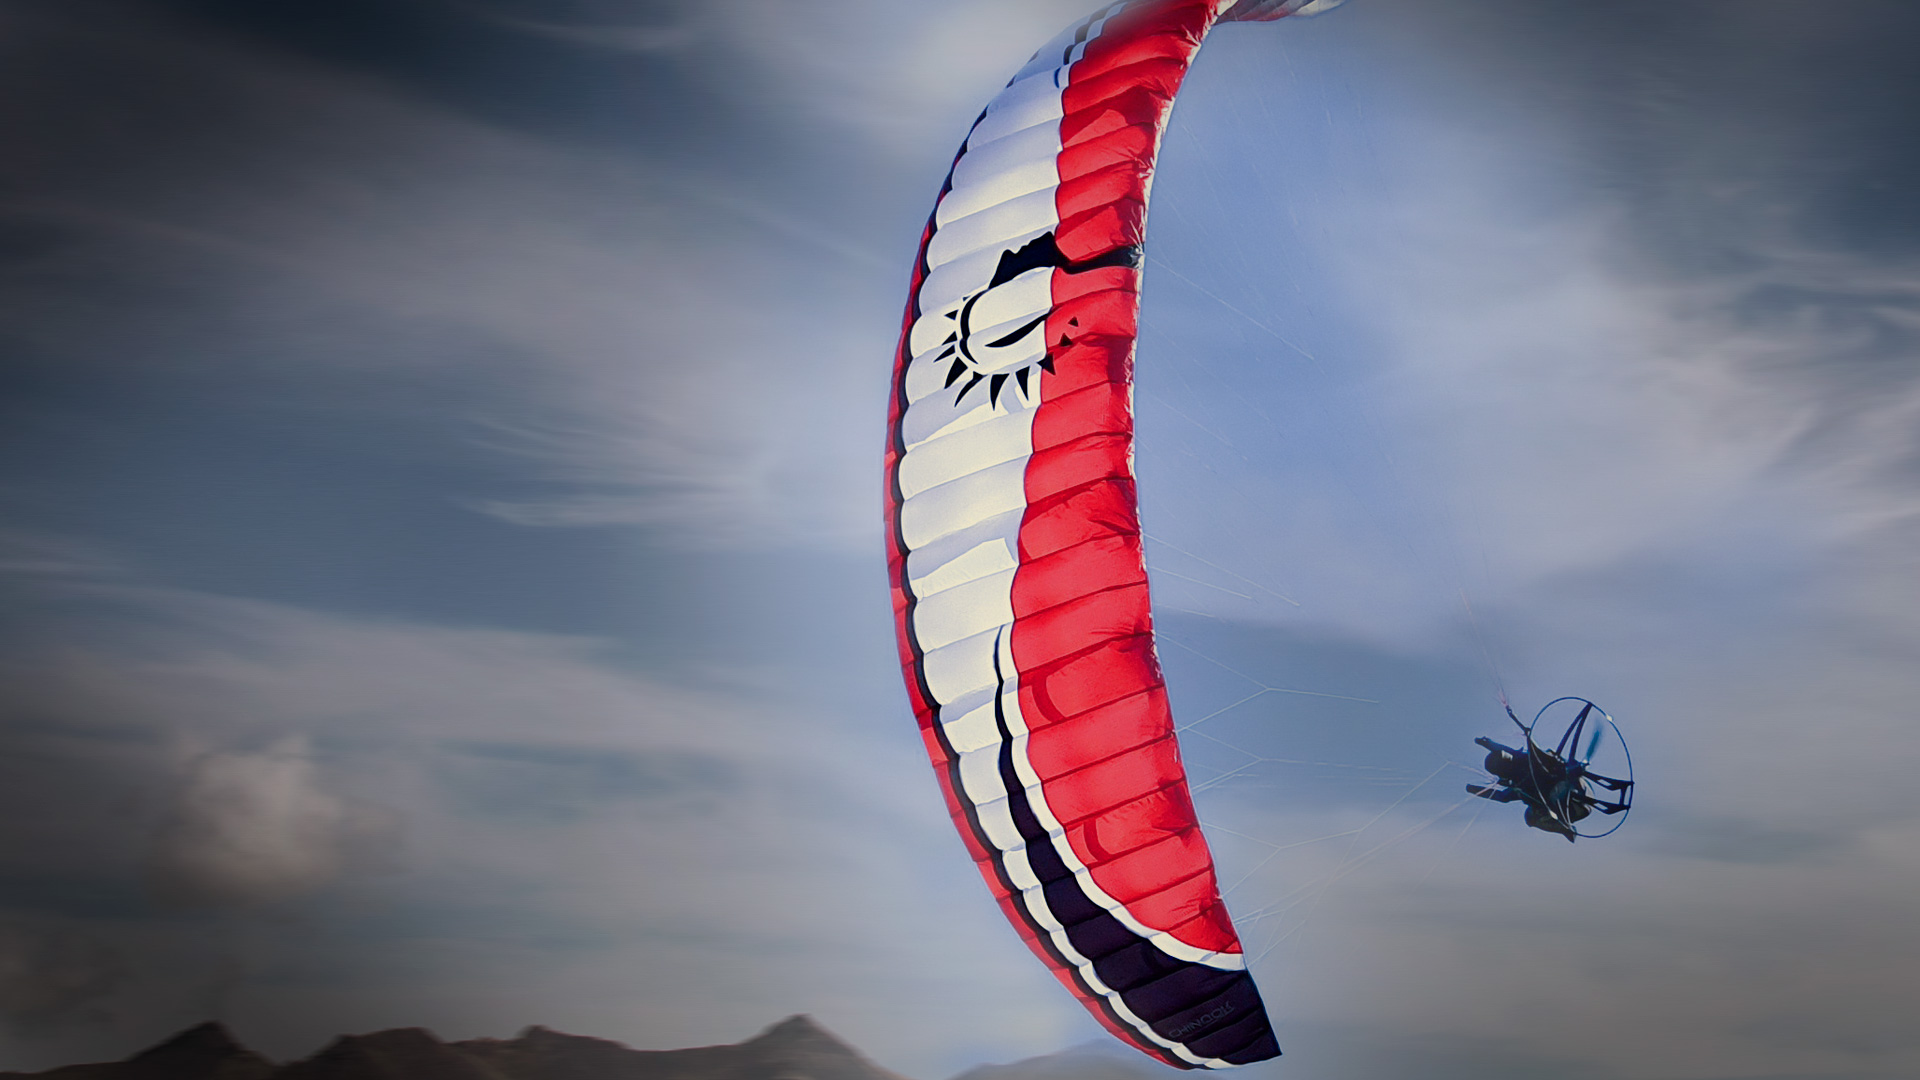 Chinook 2.8 RC Paraglider Cefics Punkair Skyman